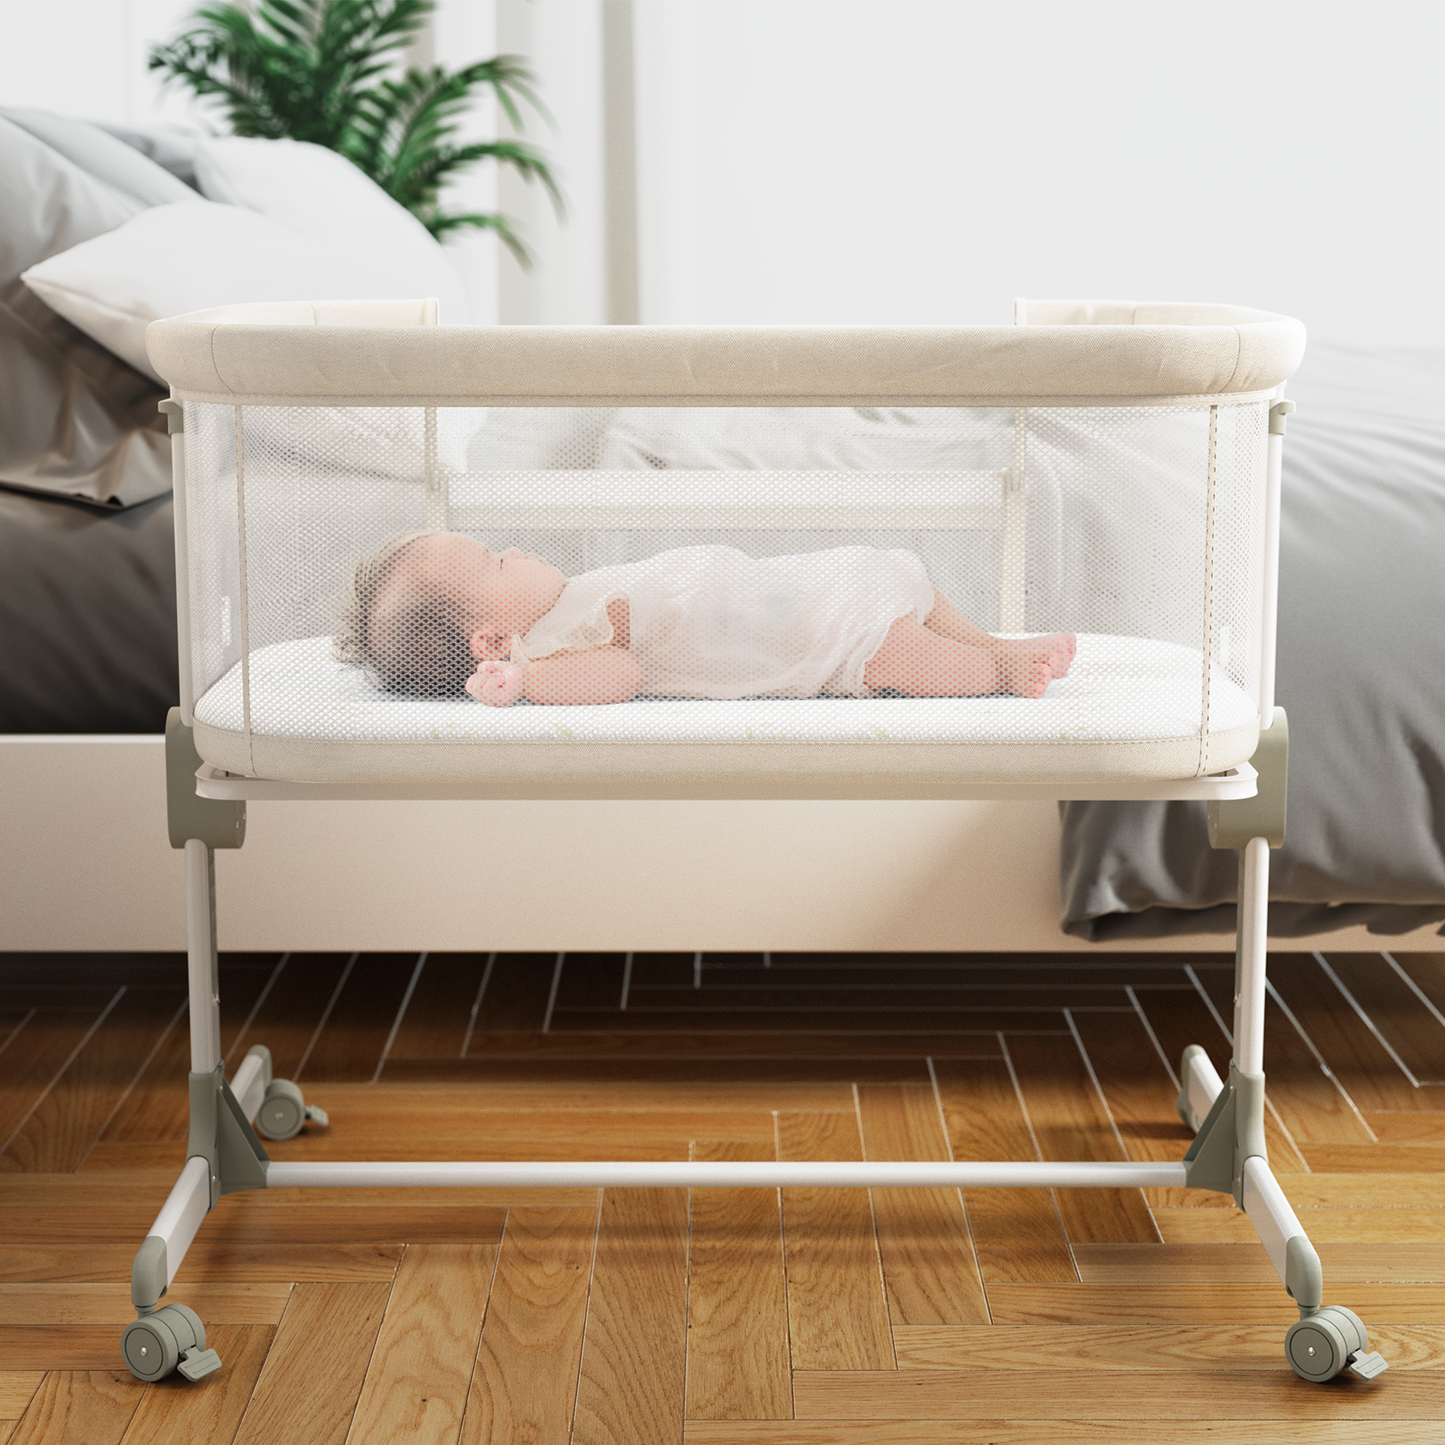 Fodoss Baby Bassinets Bedside Sleeper - All Mesh Bedside Bassinet with Wheels, 7 Height Adjustable Baby Bassinet for Infants, Beige